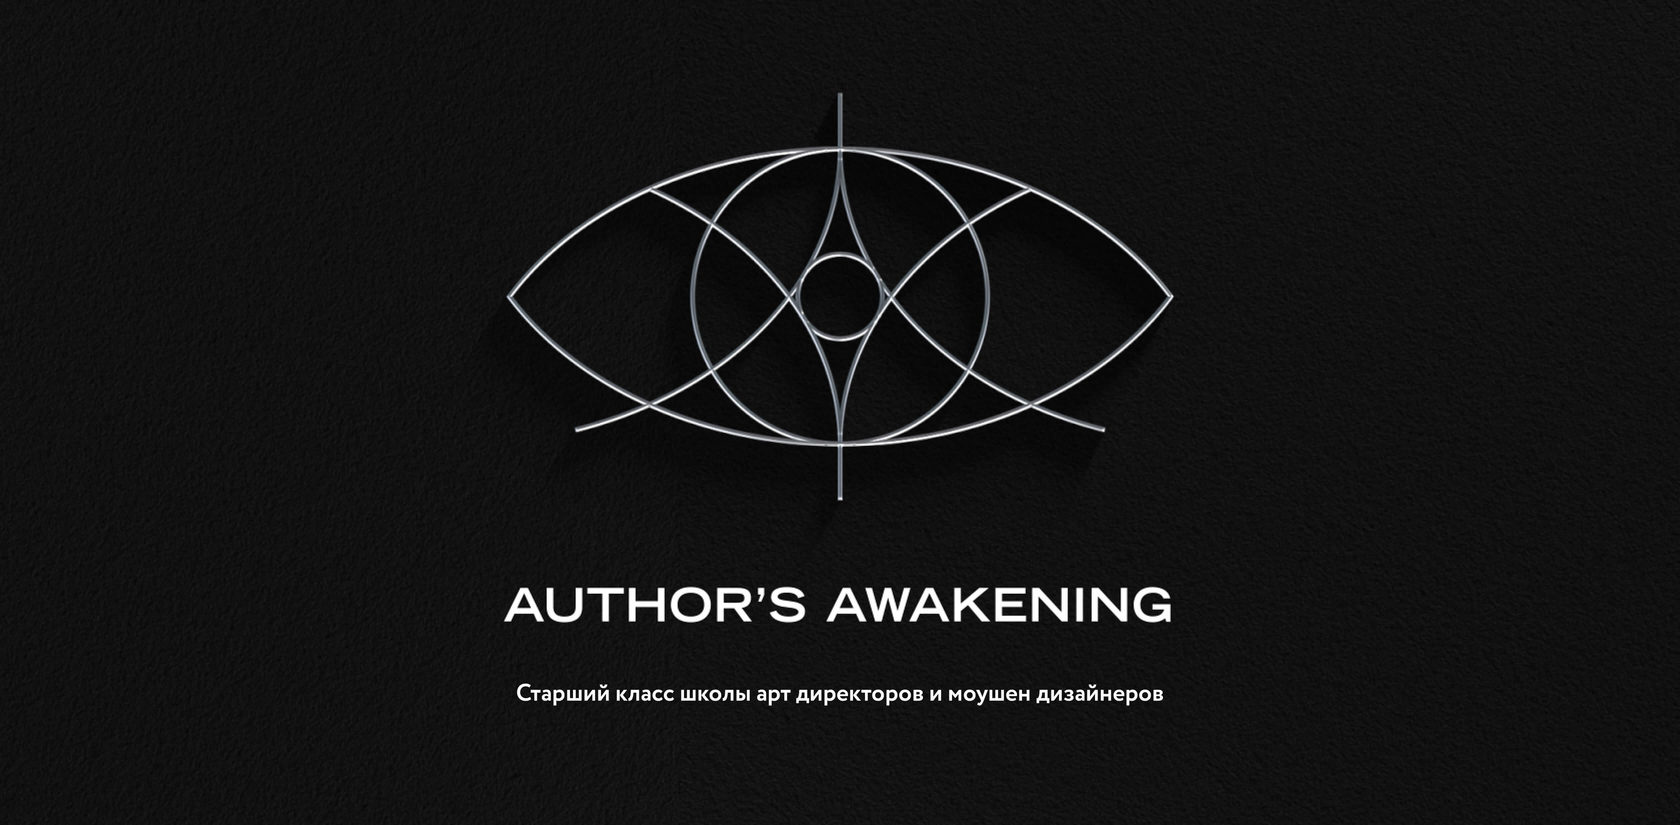 Пробуждение автора. The Awakening author. Пробуждение автора лого. Шоу автора лого.